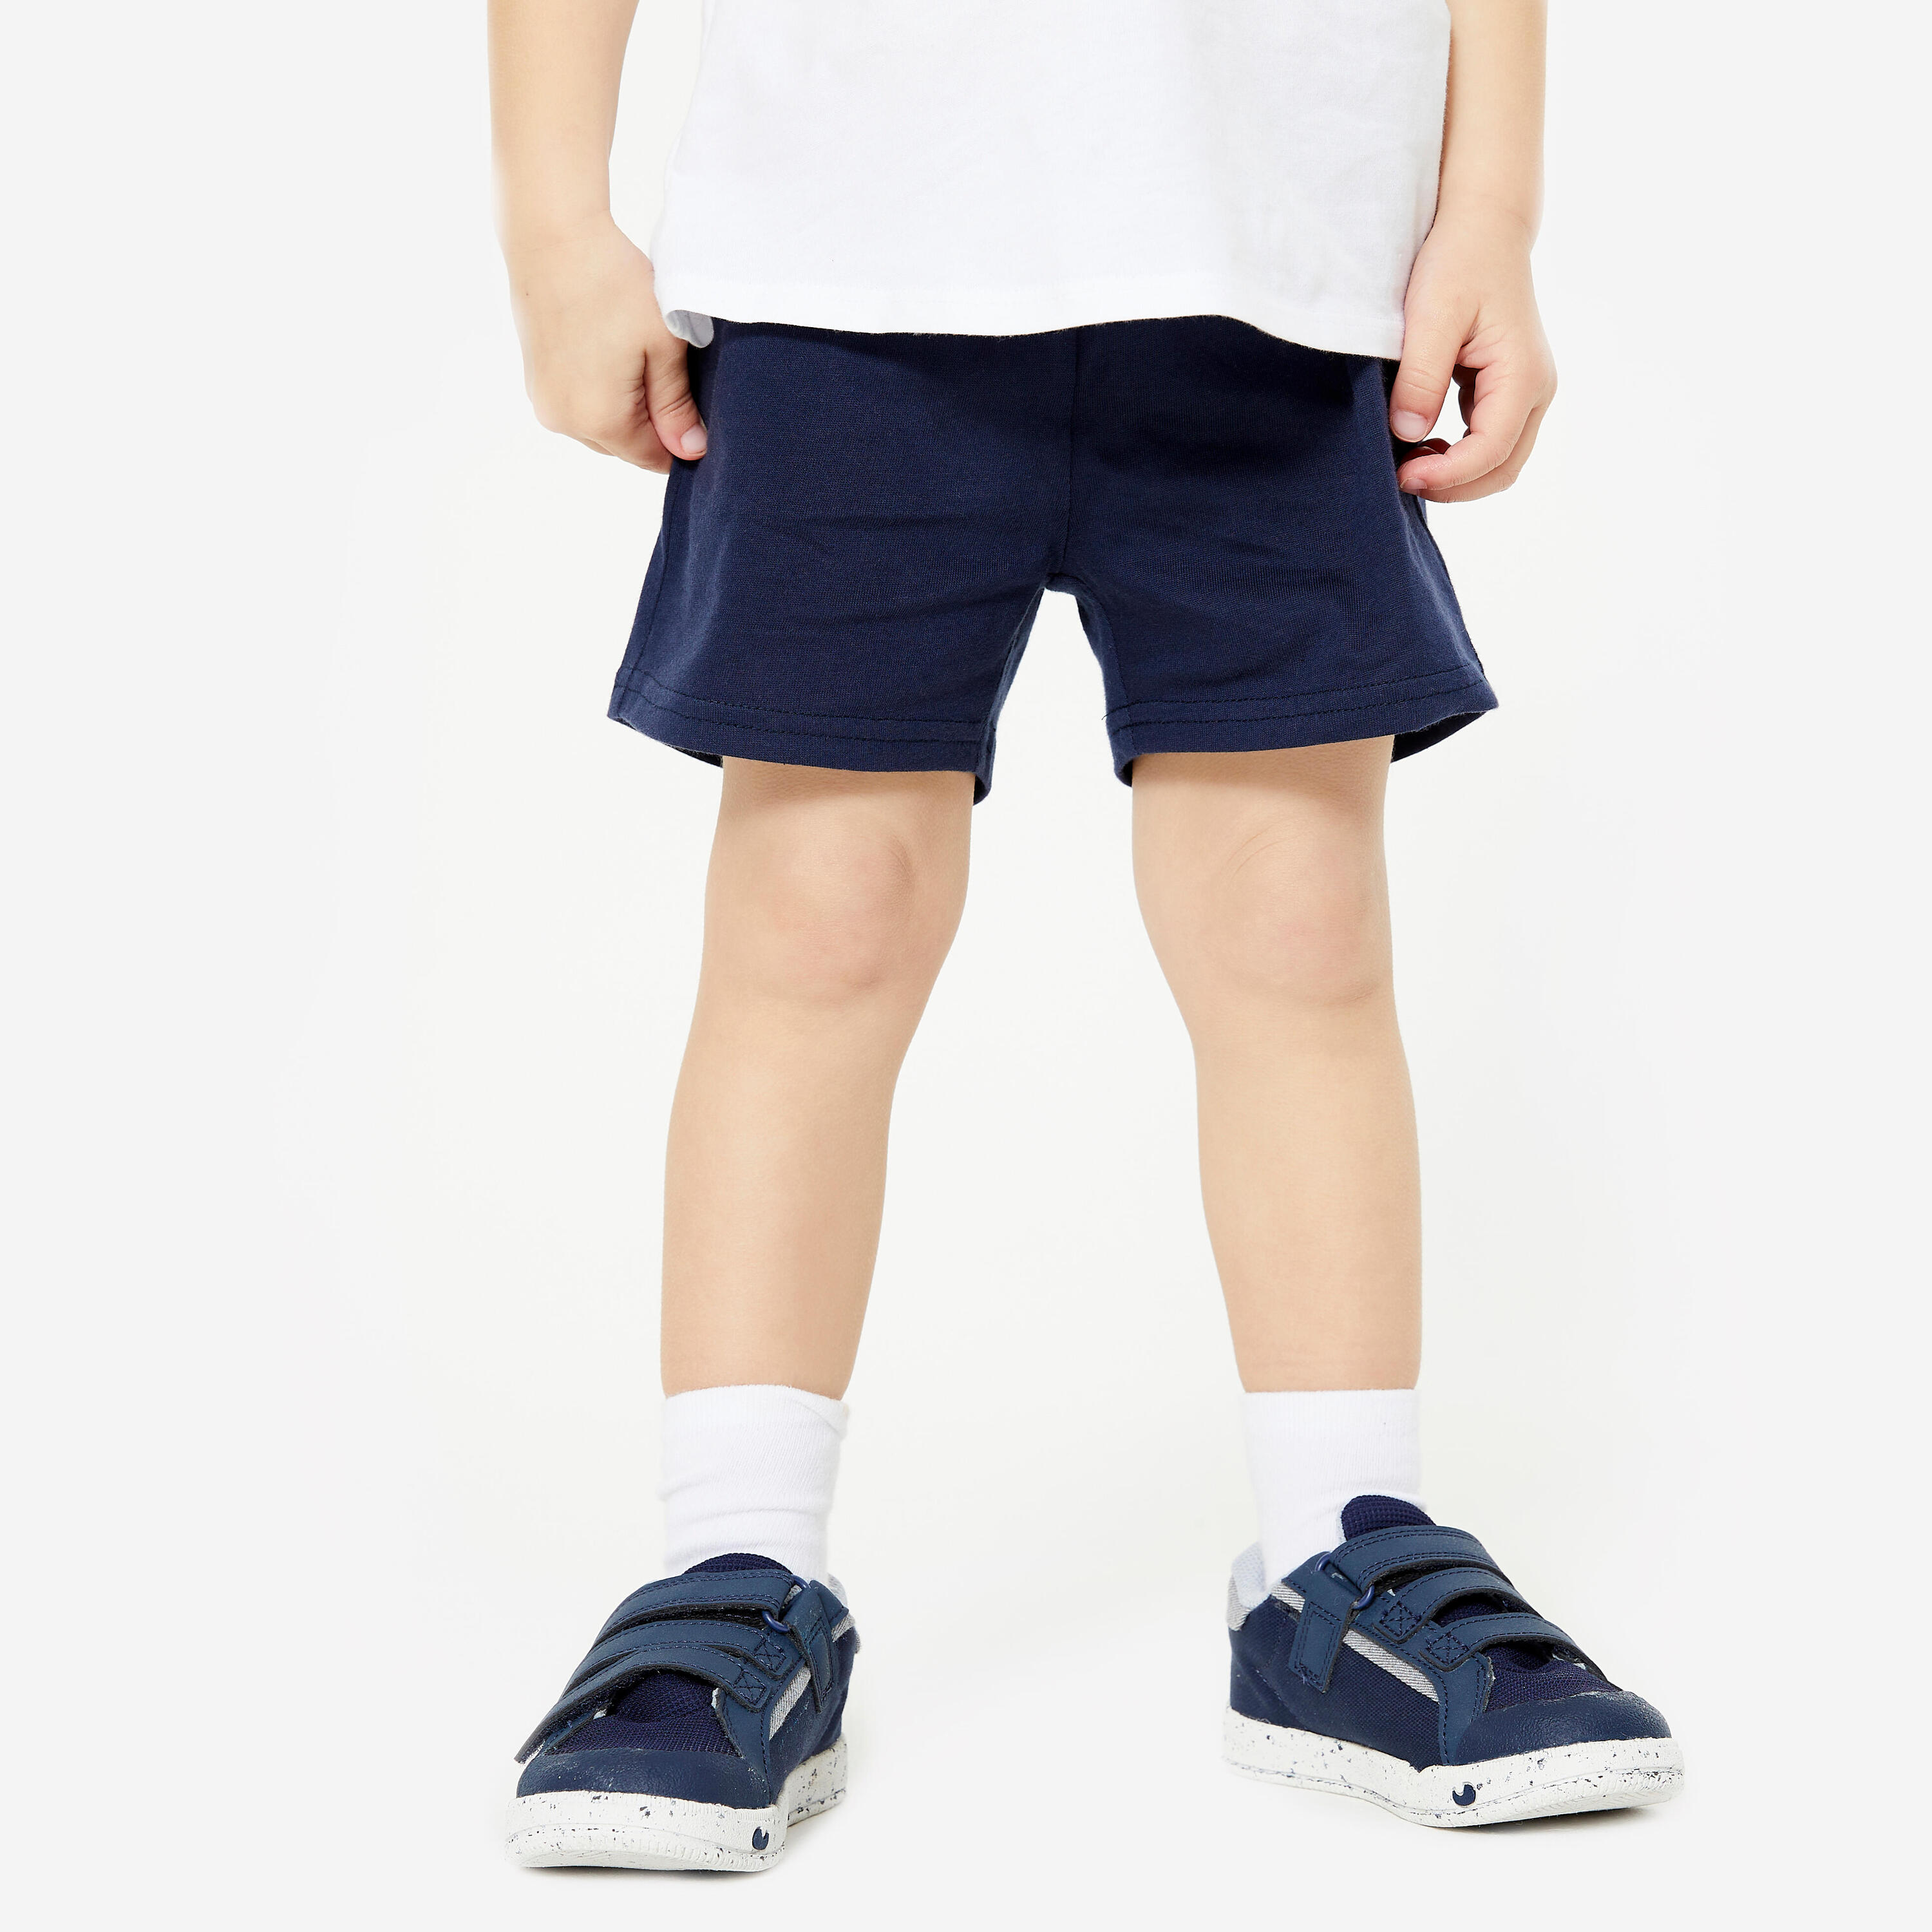 DOMYOS Baby Soft and Comfortable Shorts